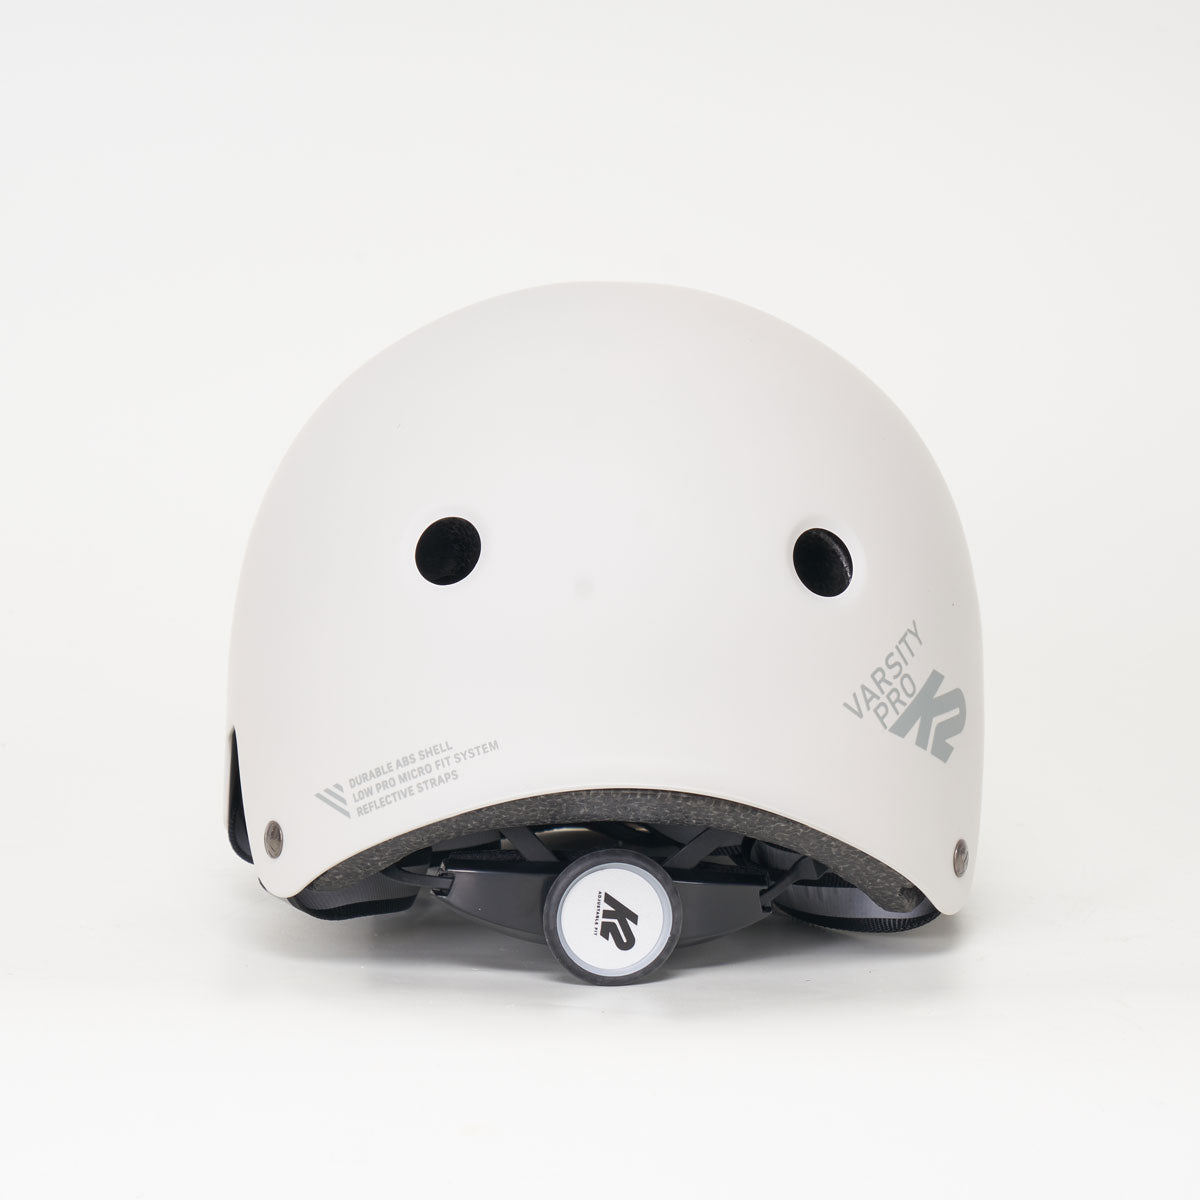 K2 Varsity Pro Grey Helmet